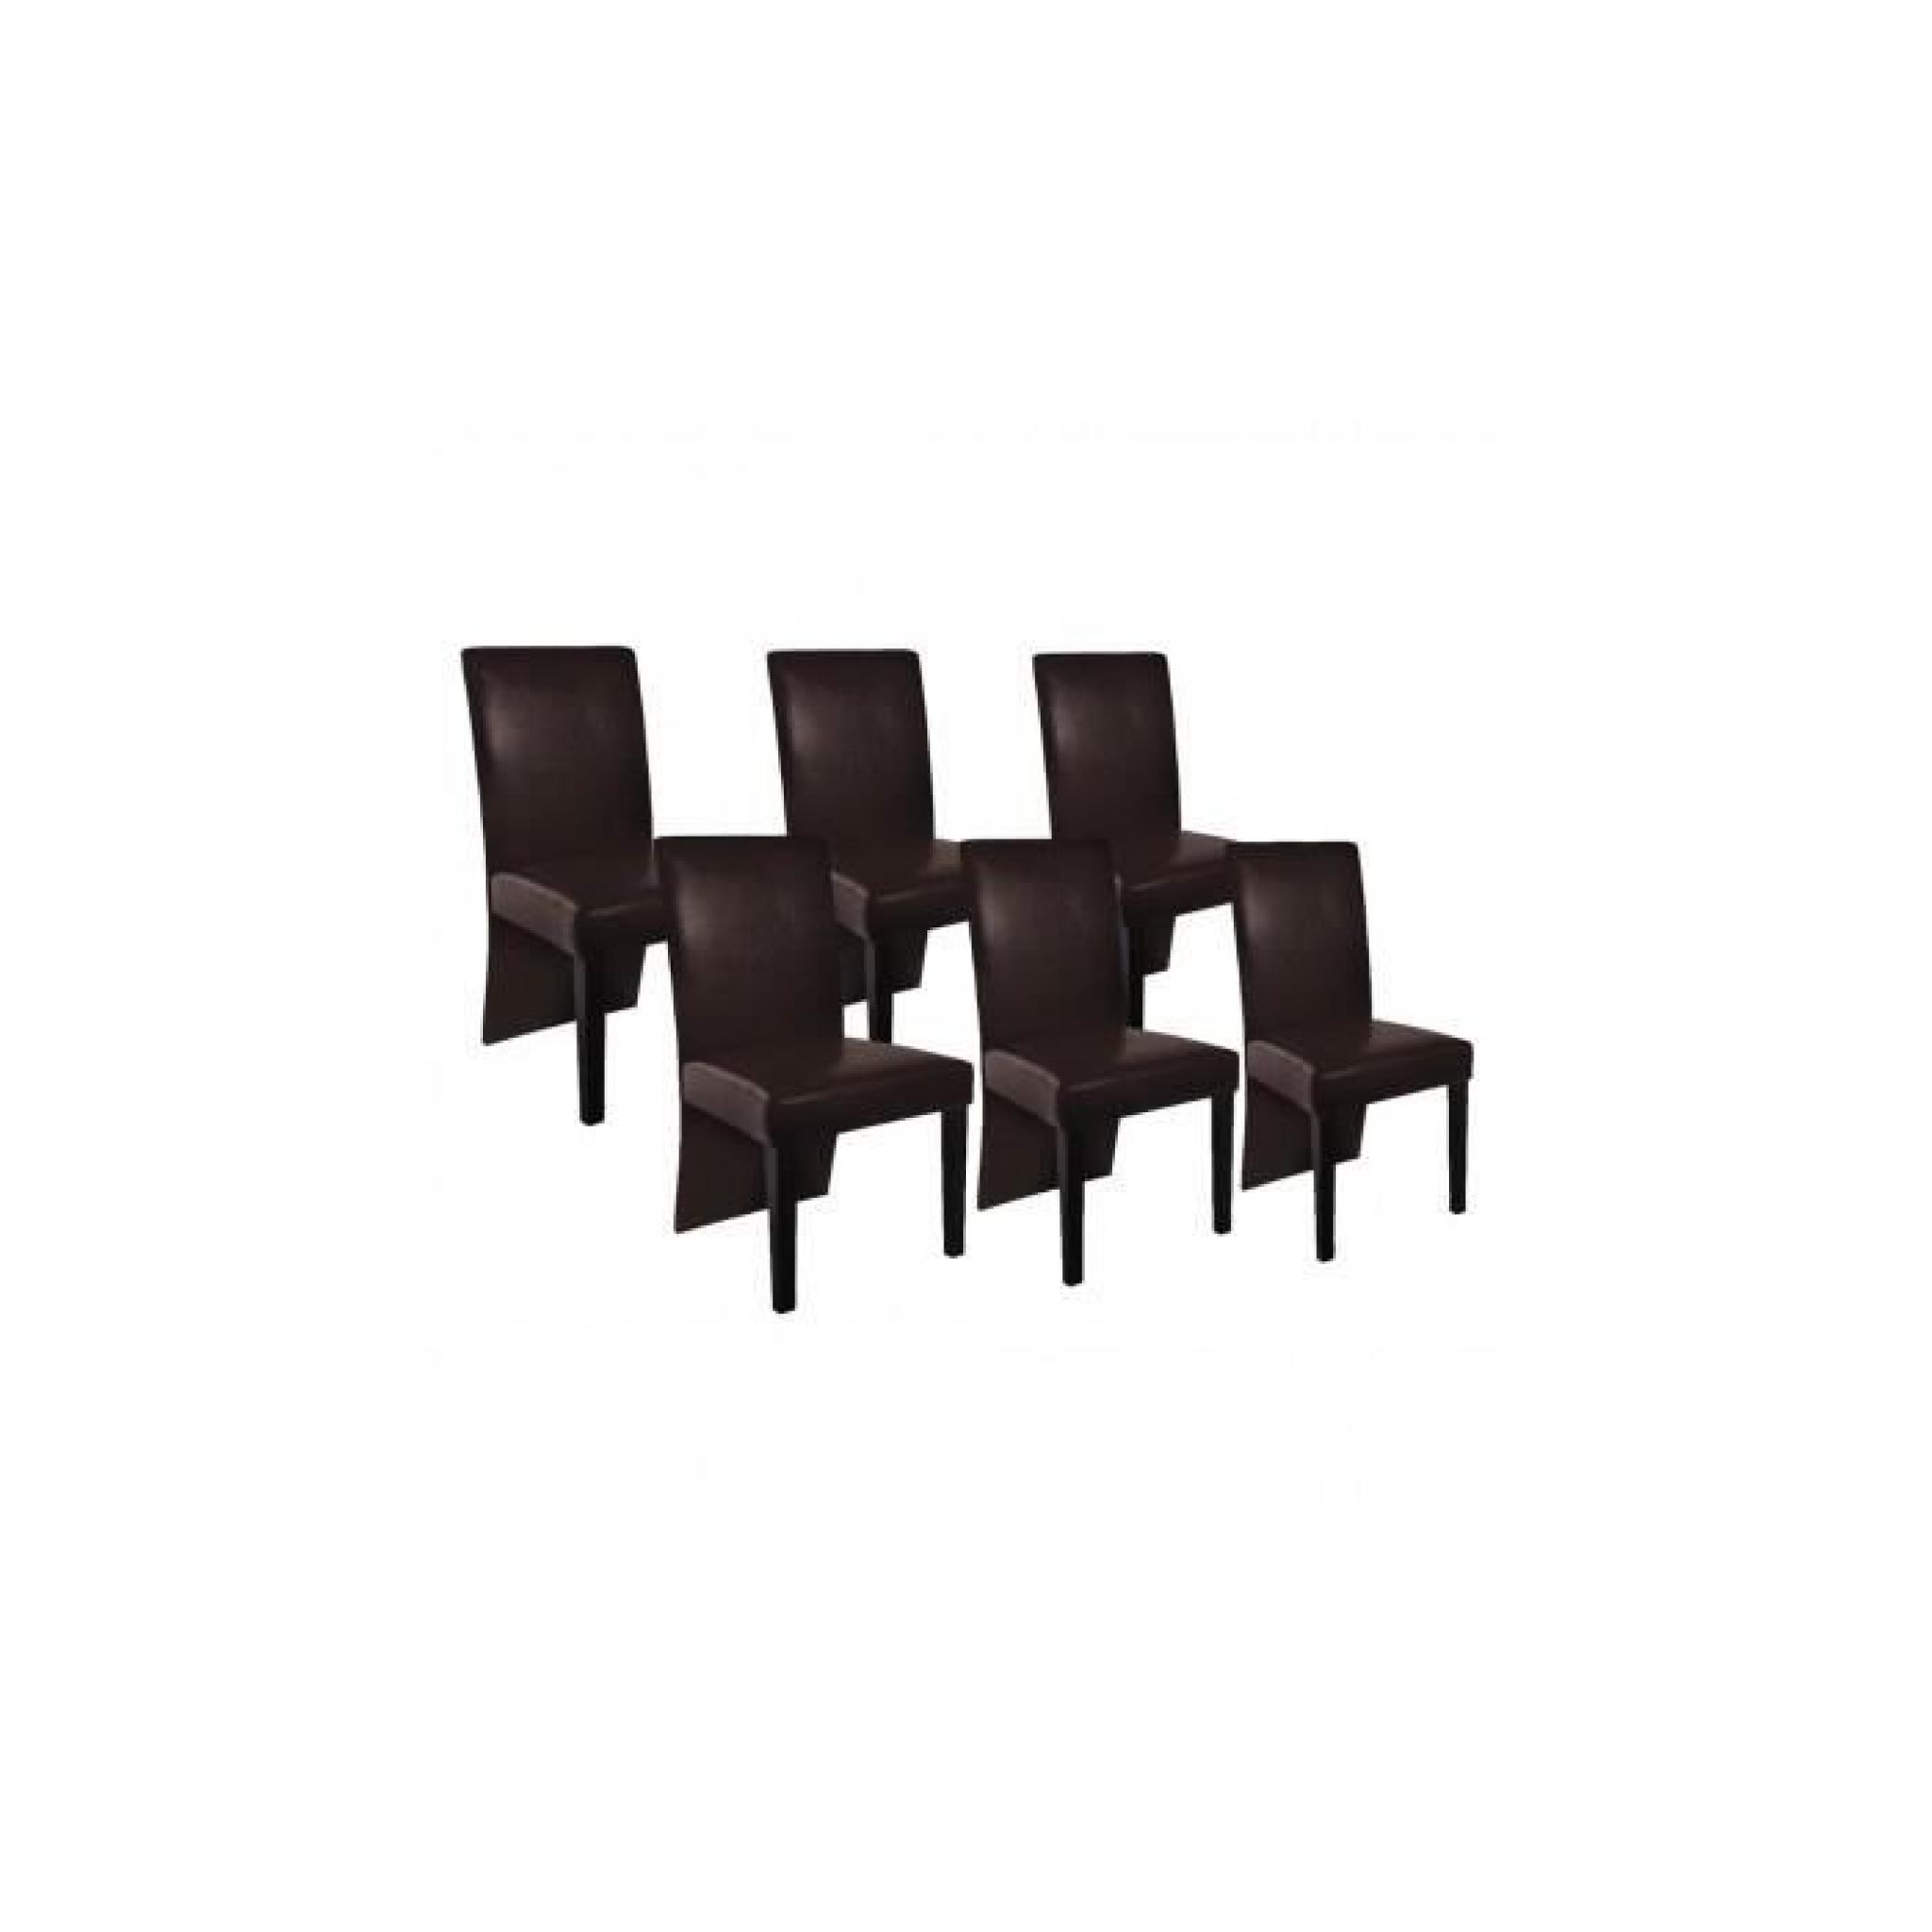 Chaise design bois marron (lot de 6)